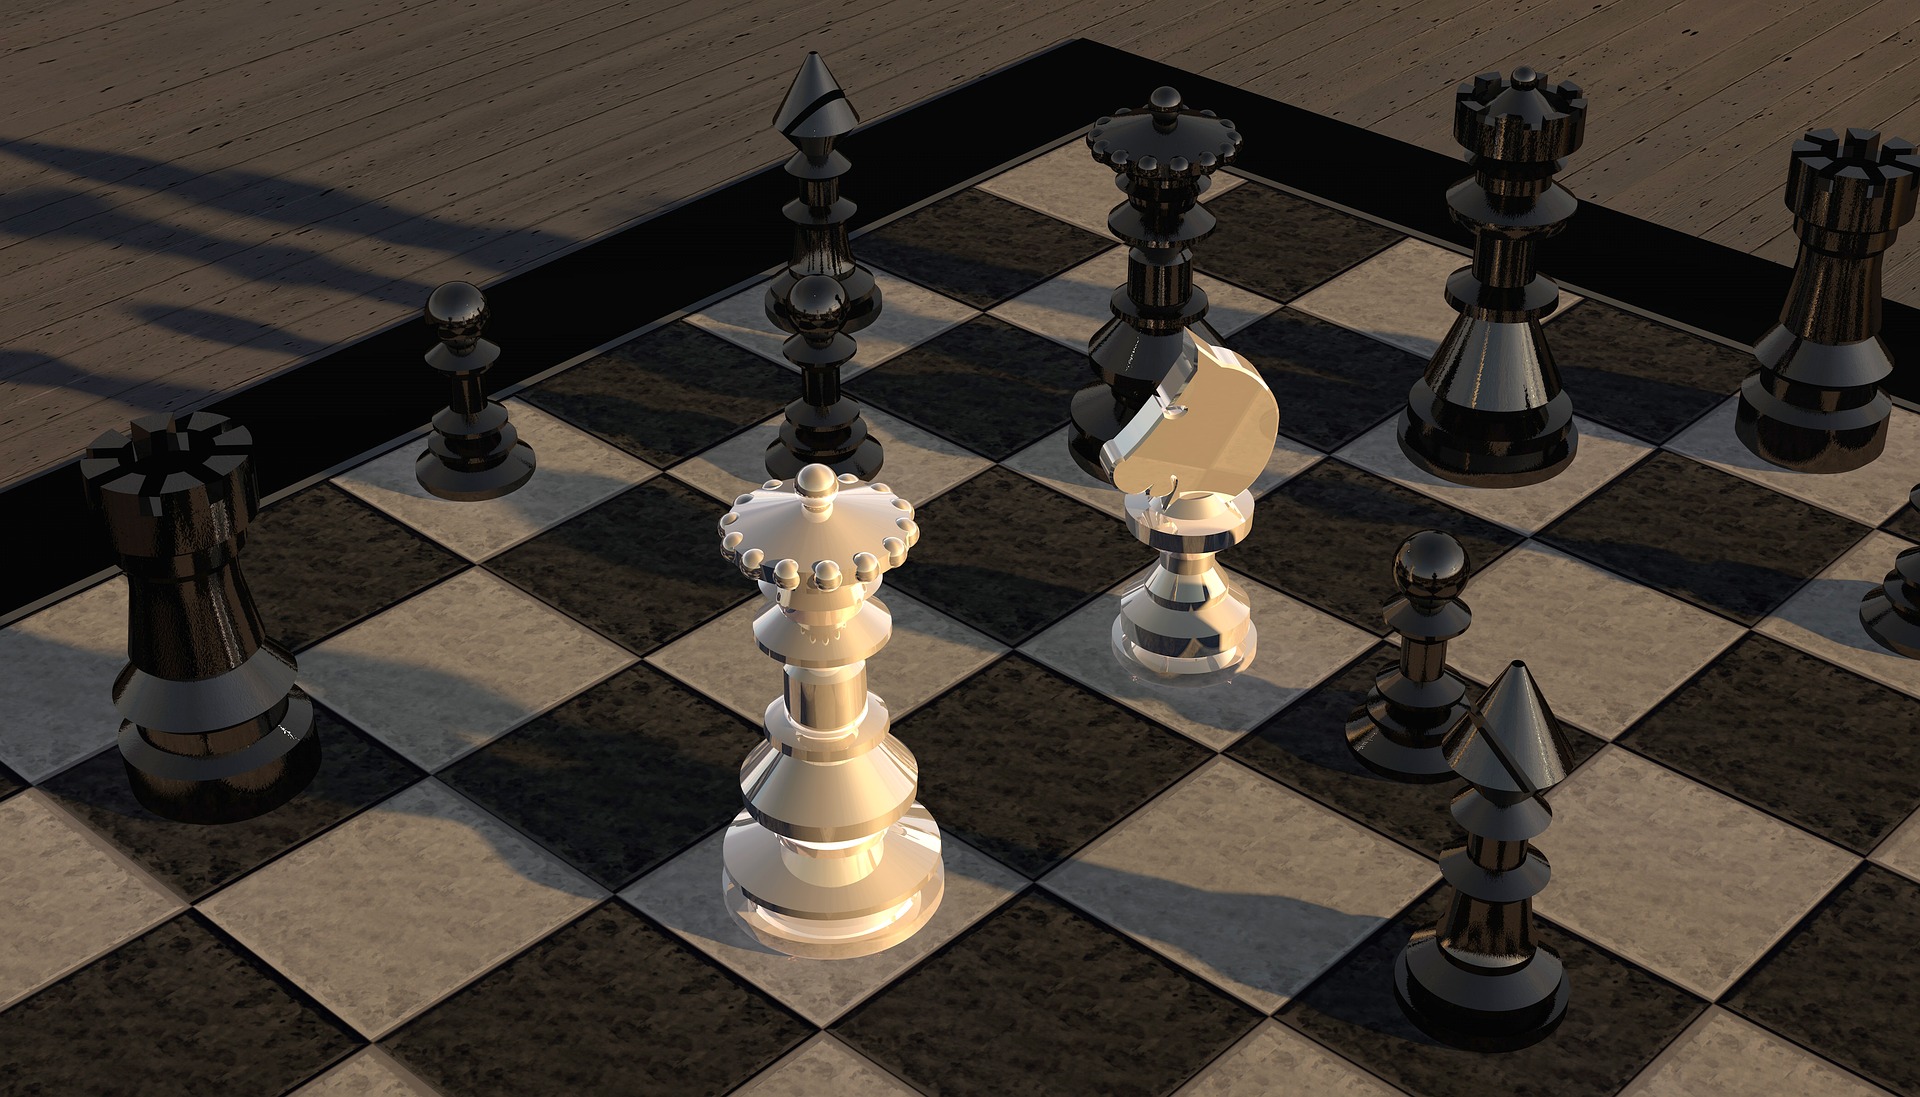 Schach spielen verbieten? Studenten als Bedrohung einer freien Gesellschaft